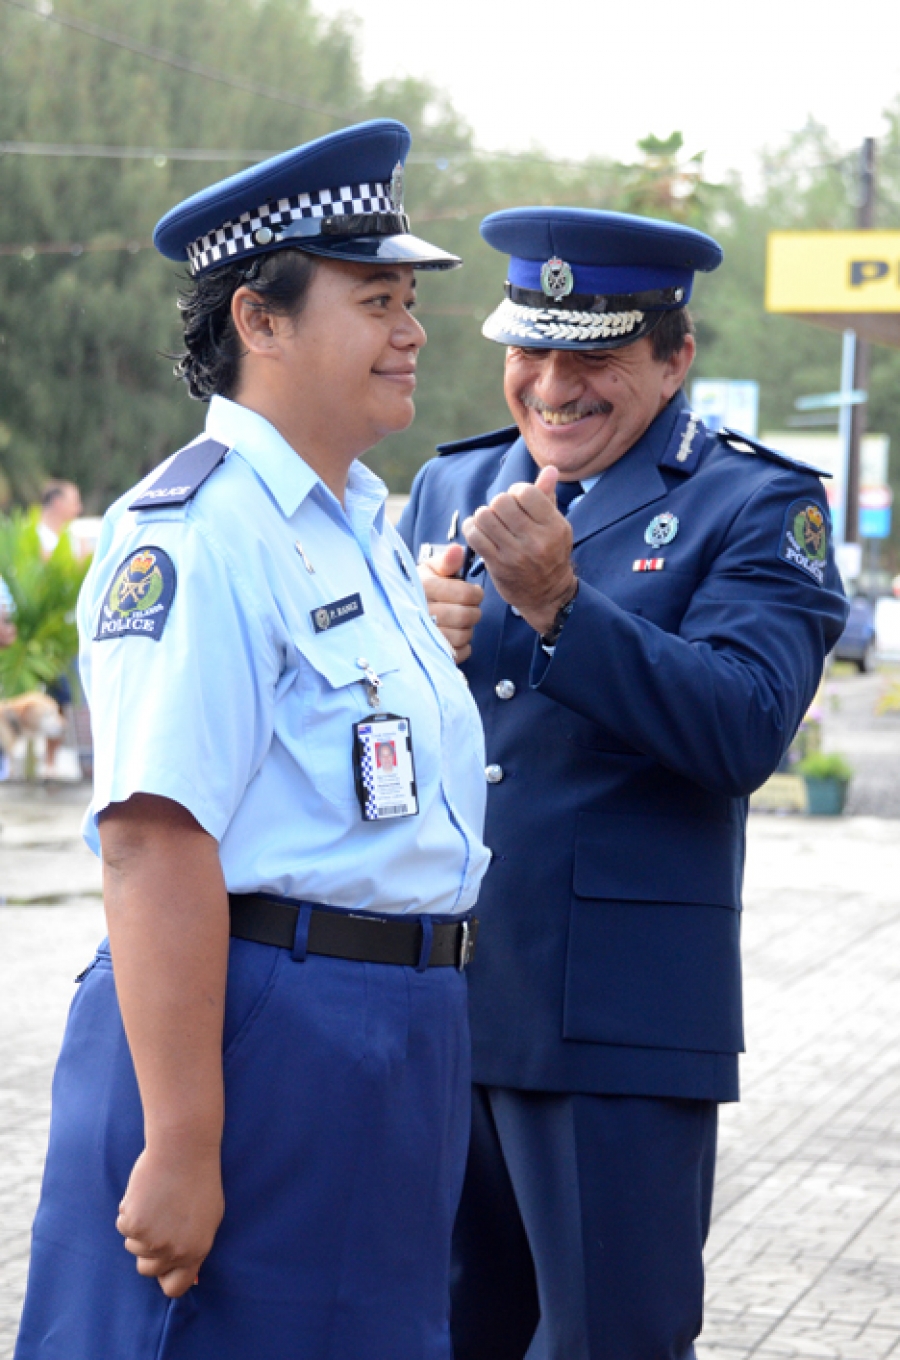 Police focus on women in leadership